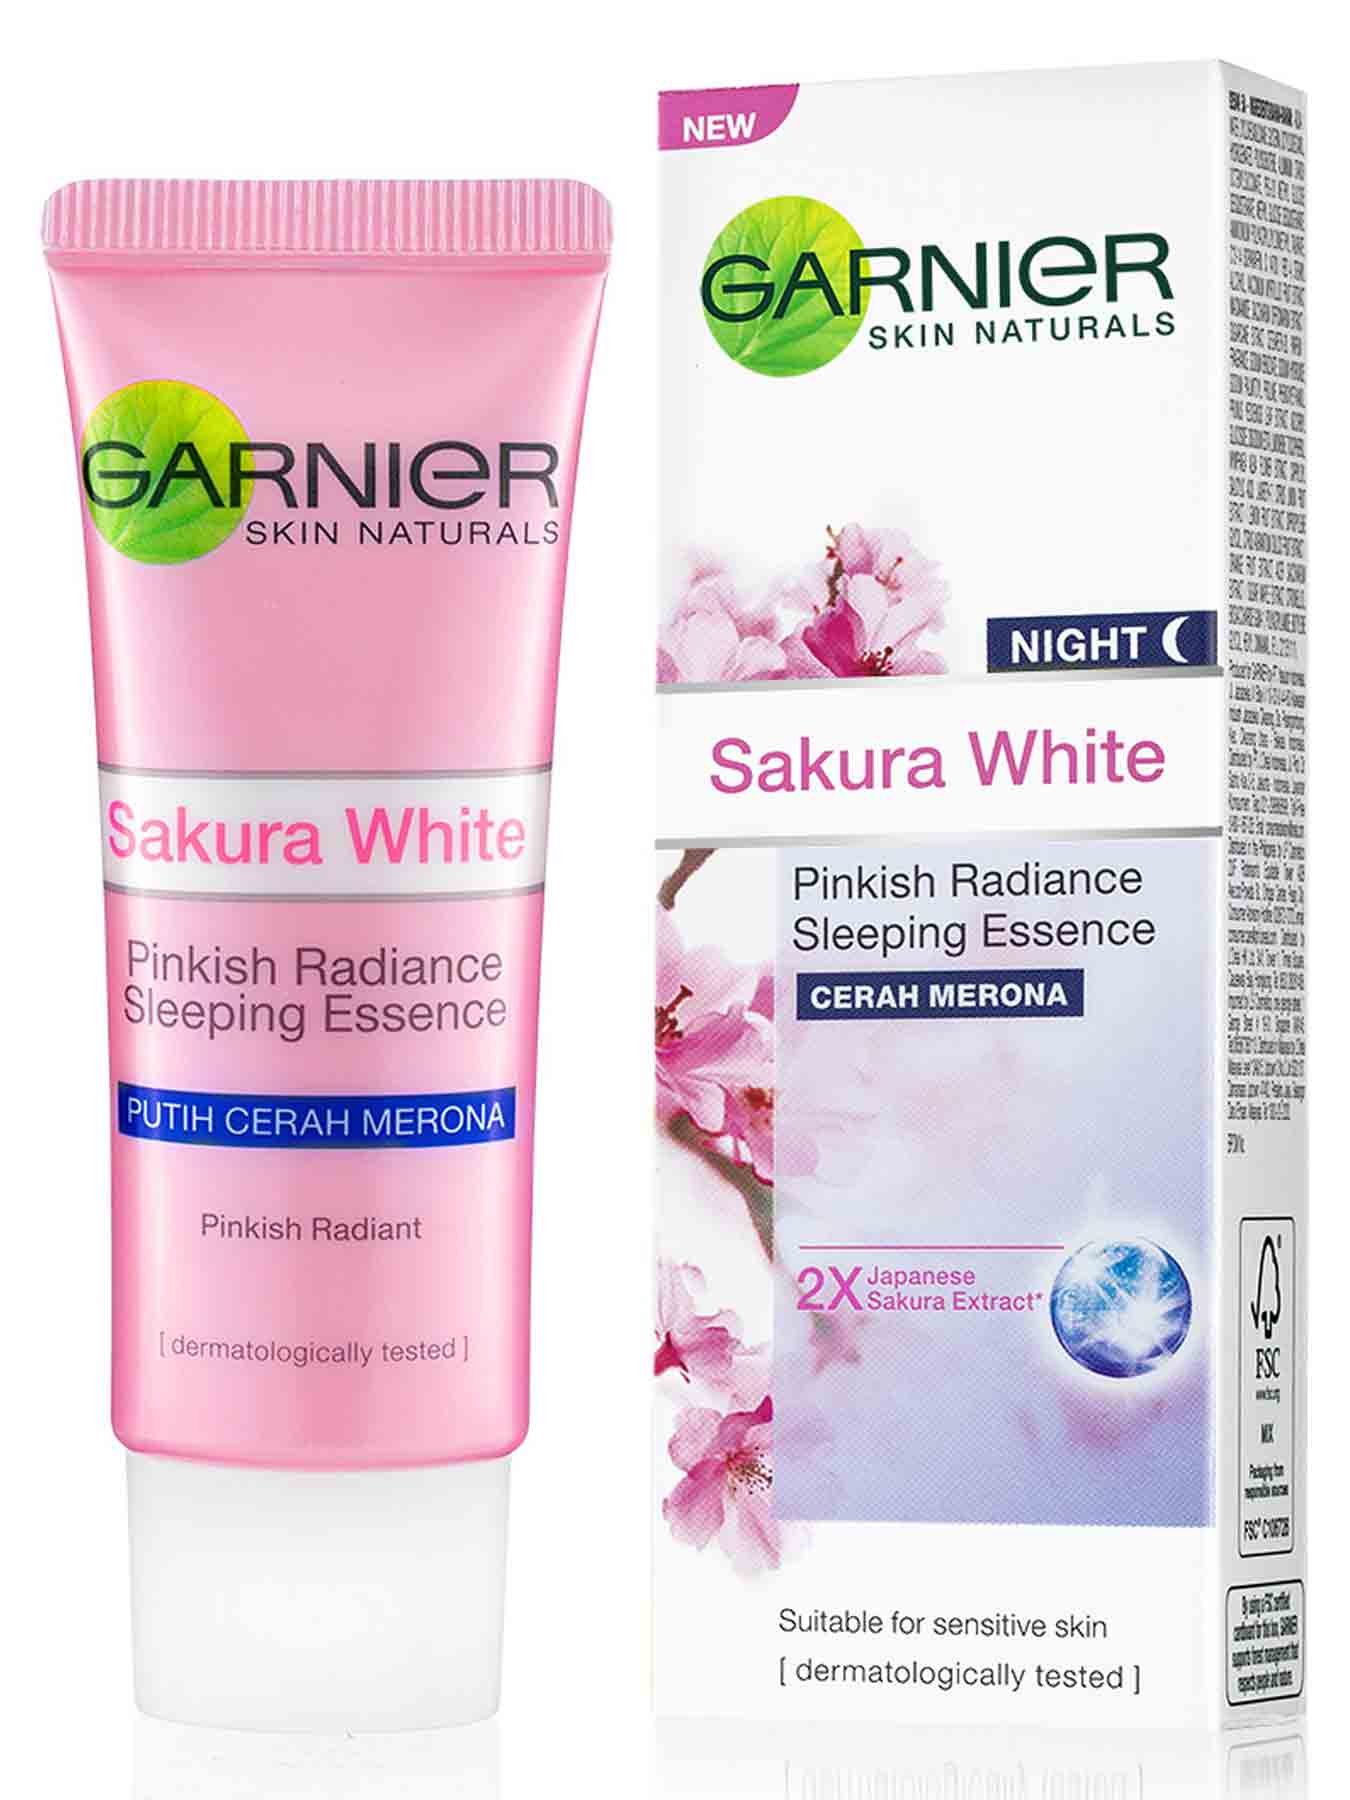 Sakura White Night Cream 20ml Krim Malam Garnier